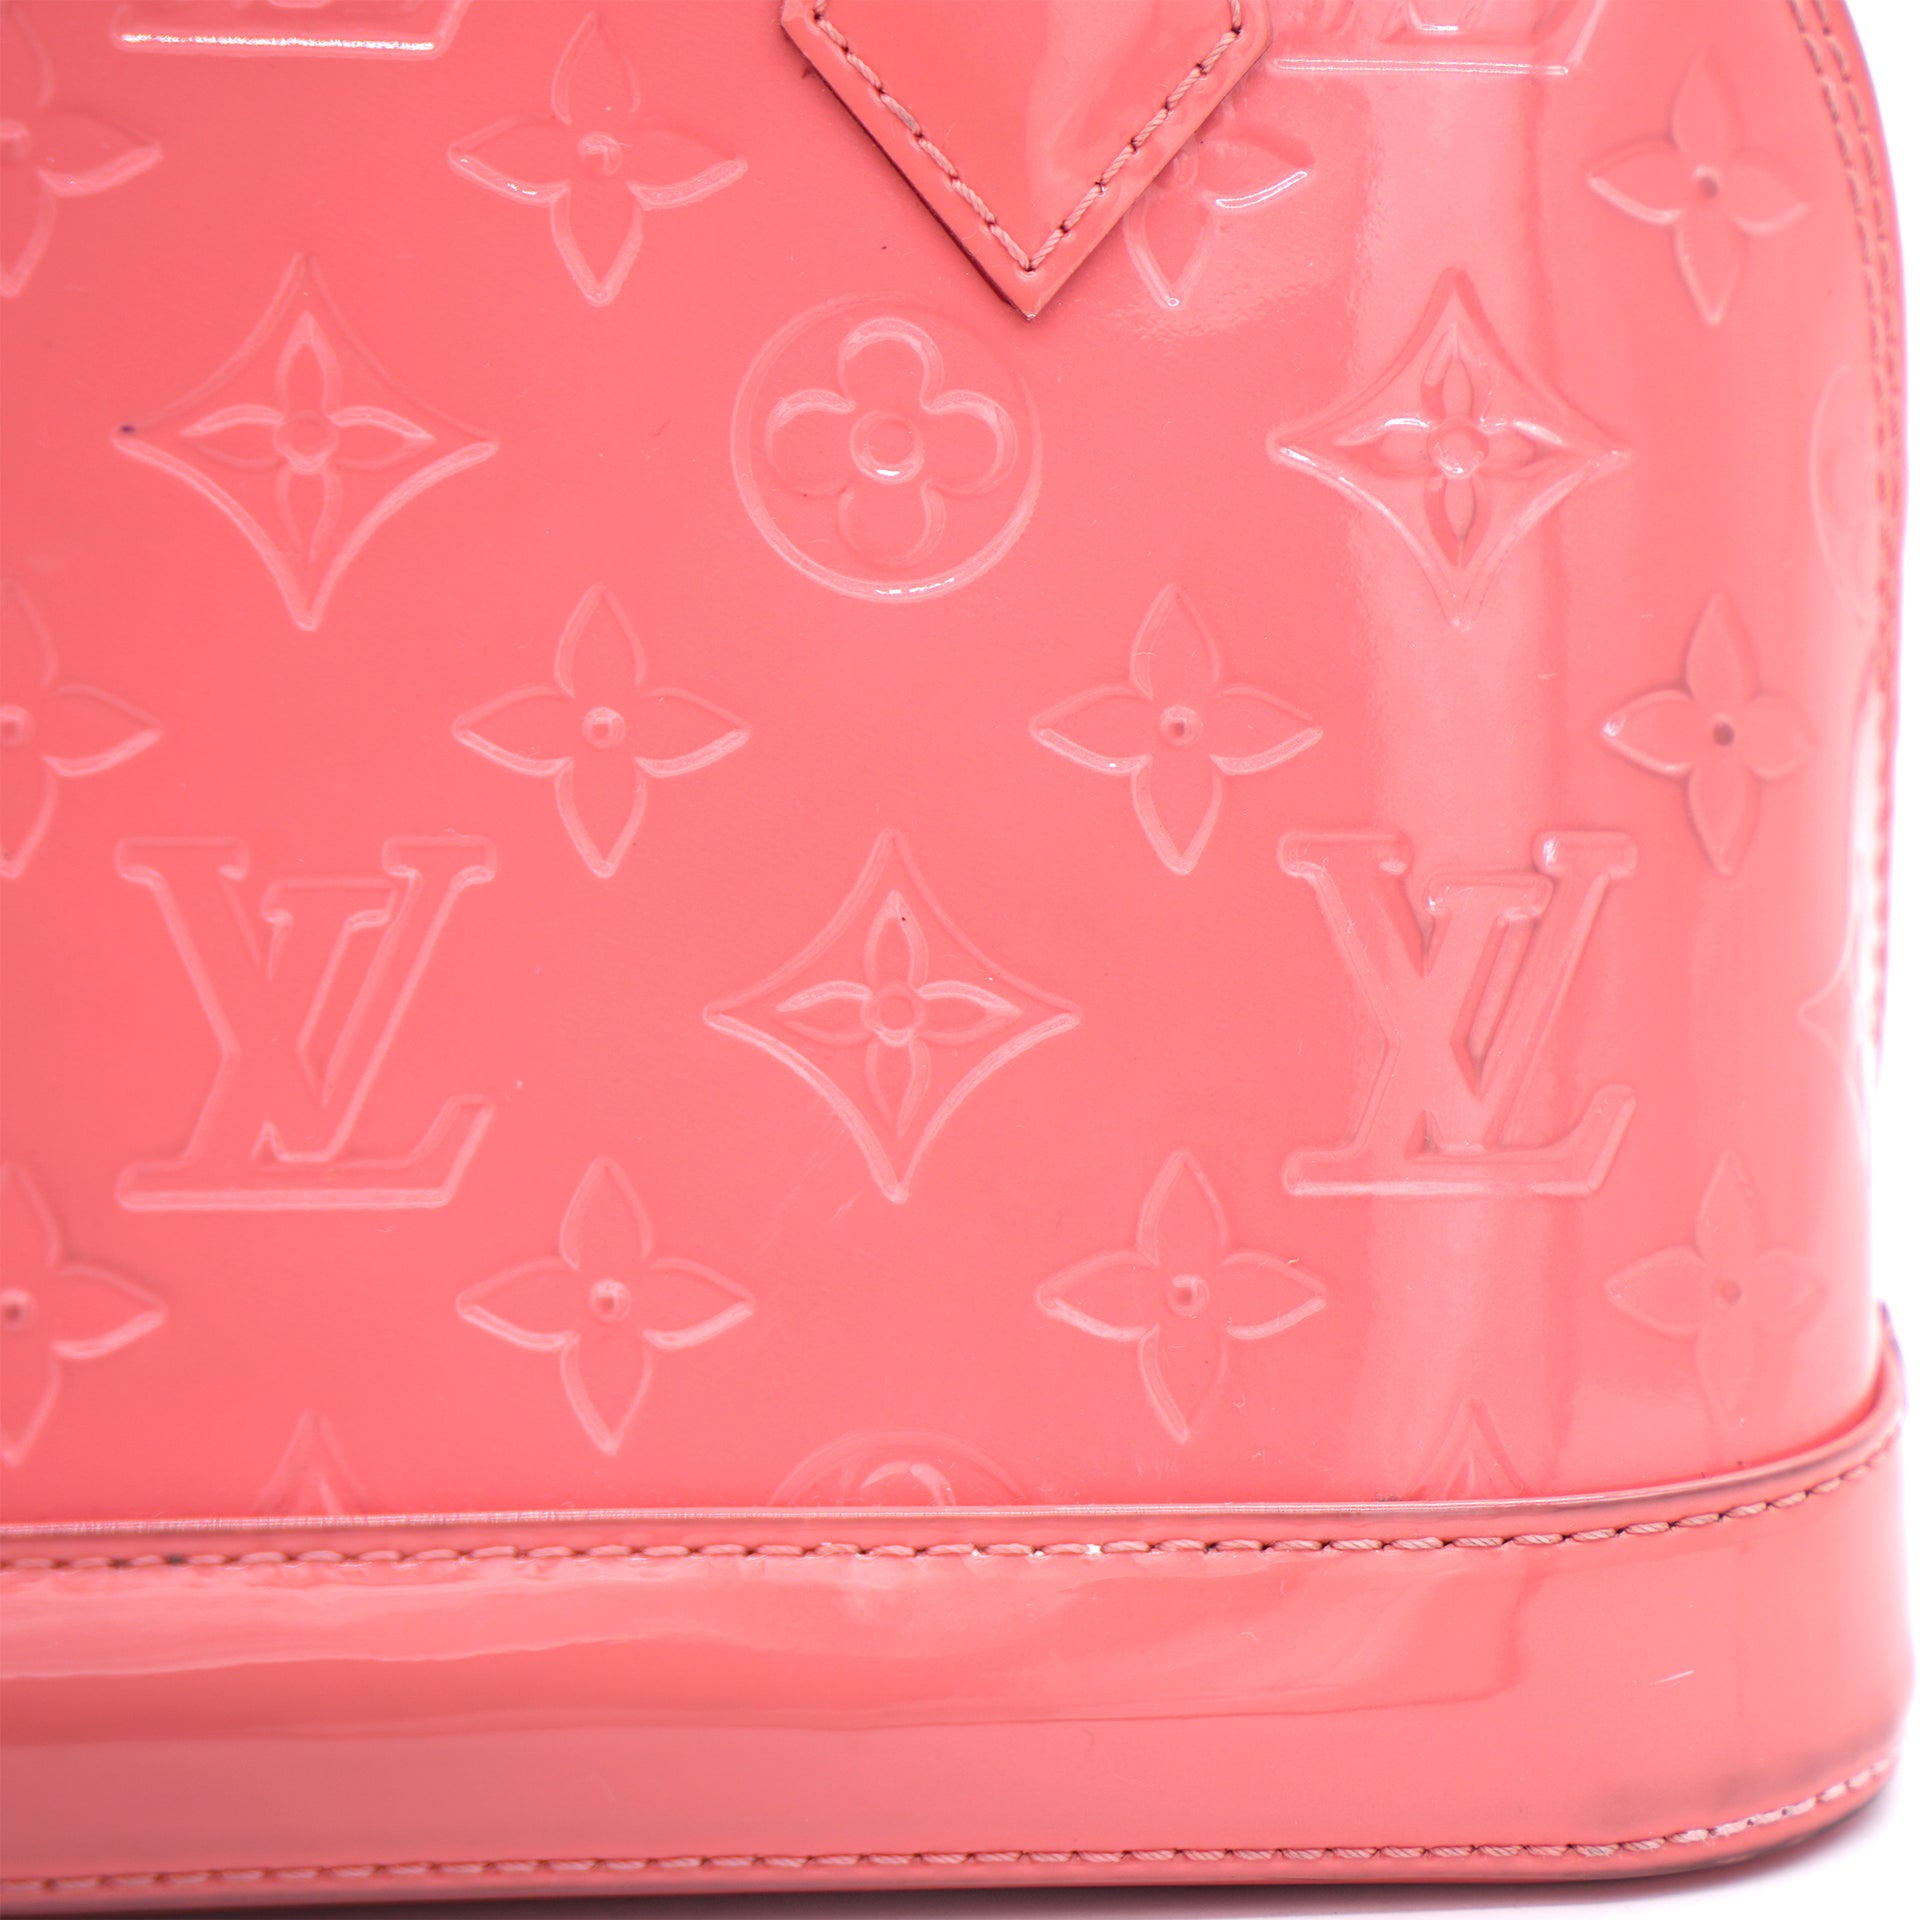 Louis Vuitton Light Pink Vernis Monogram Alma BB